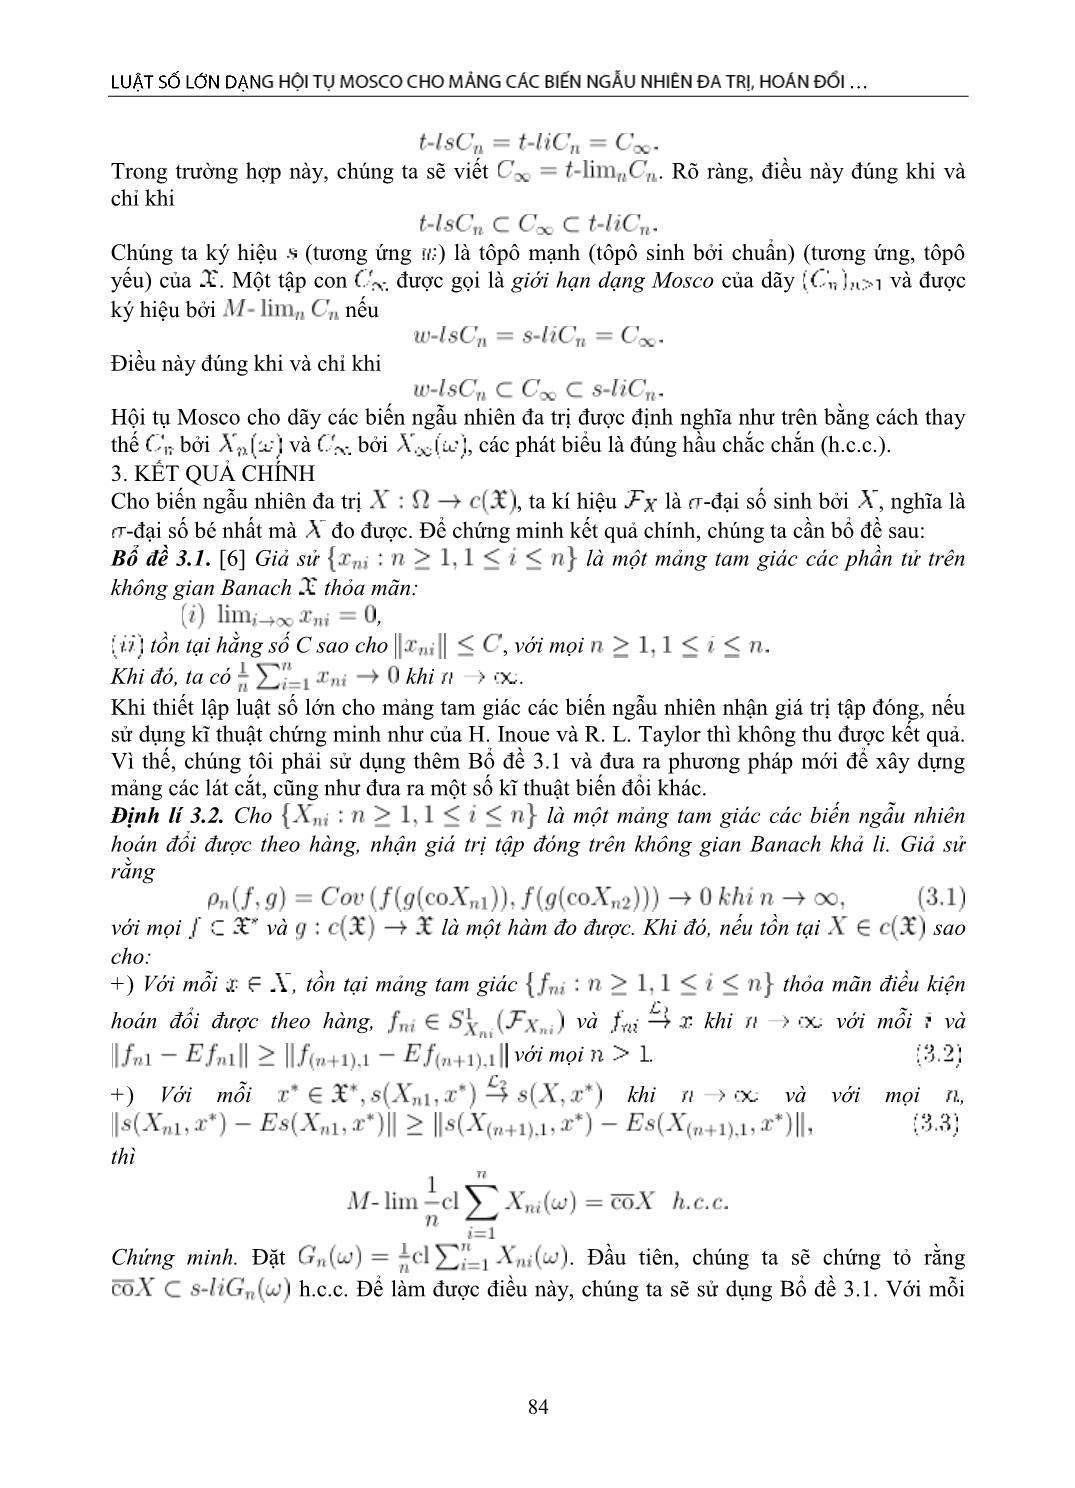 Luật số lớn dạng hội tụ Mosco cho mảng các biến ngẫu nhiên đa trị, hoán đổi được theo hàng trang 3